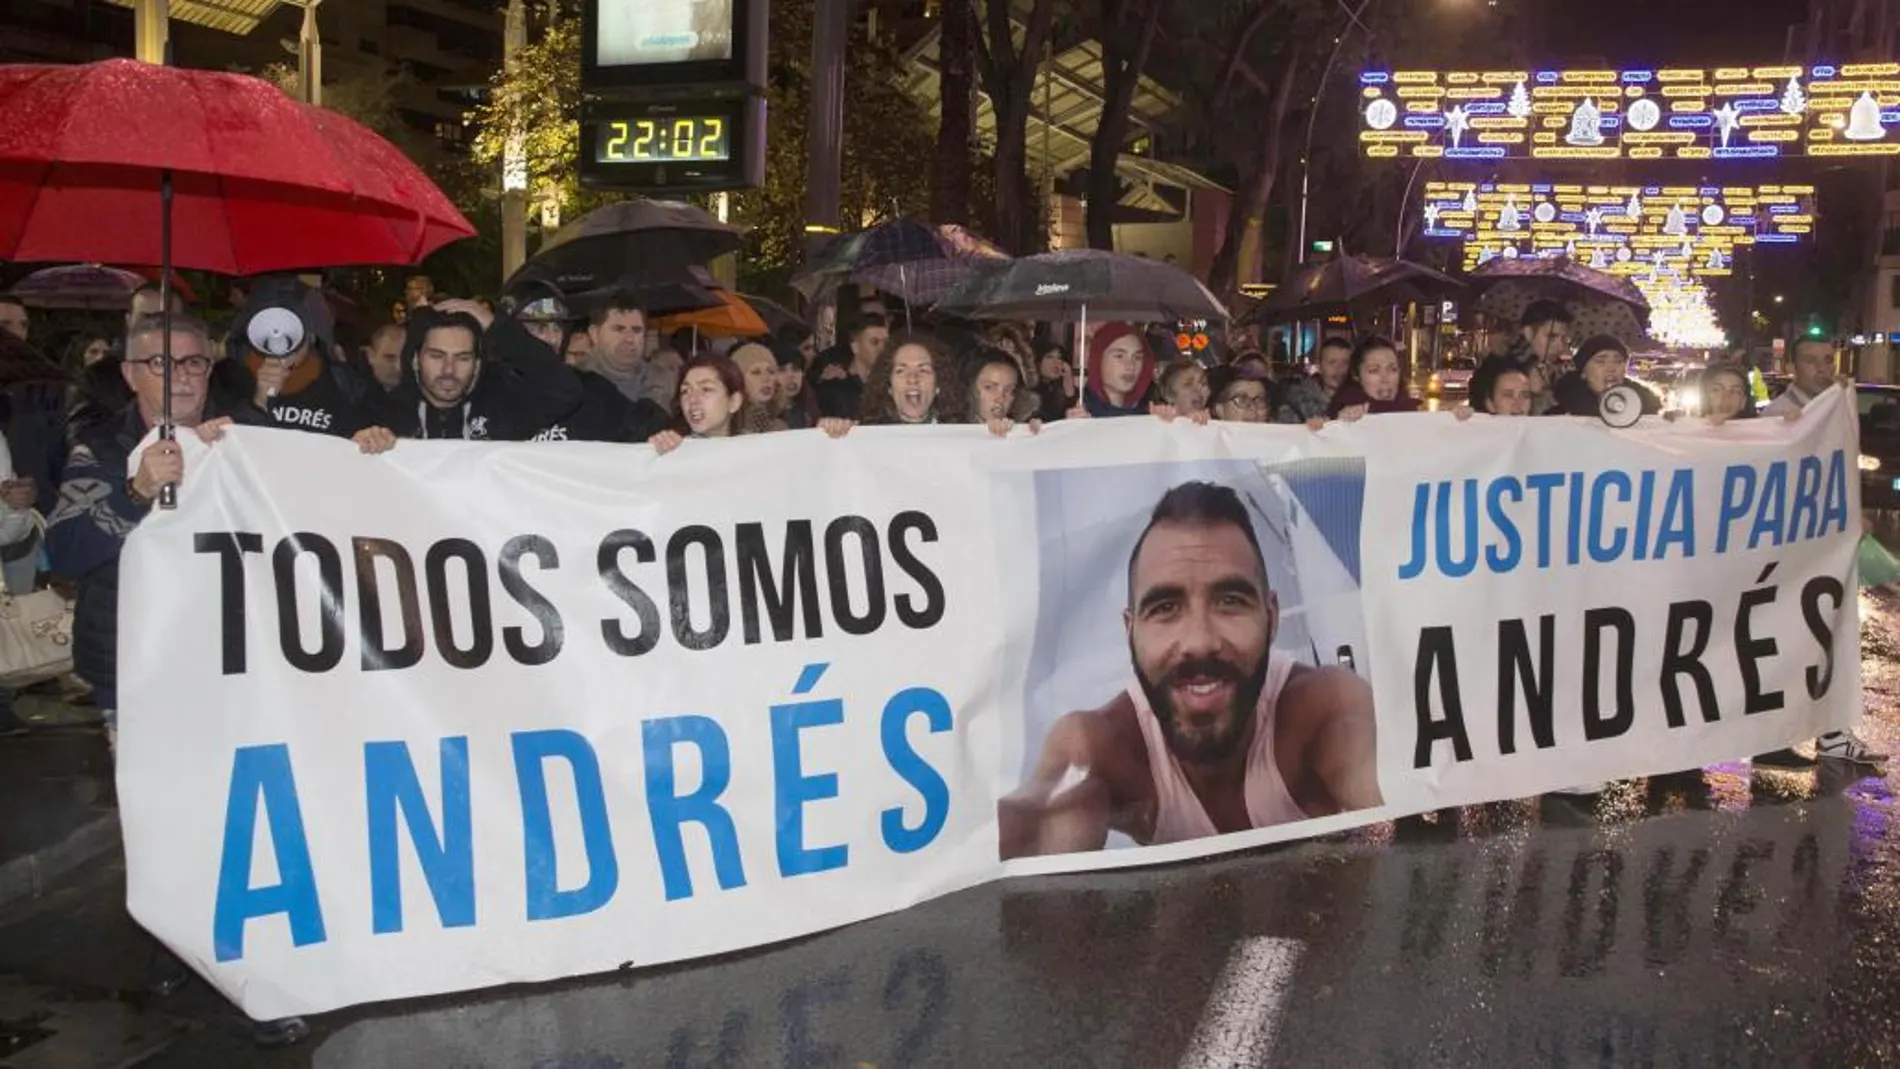 Concentraron en apoyo de Andrés, el joven agredido por el portero de la discoteca en Murcia